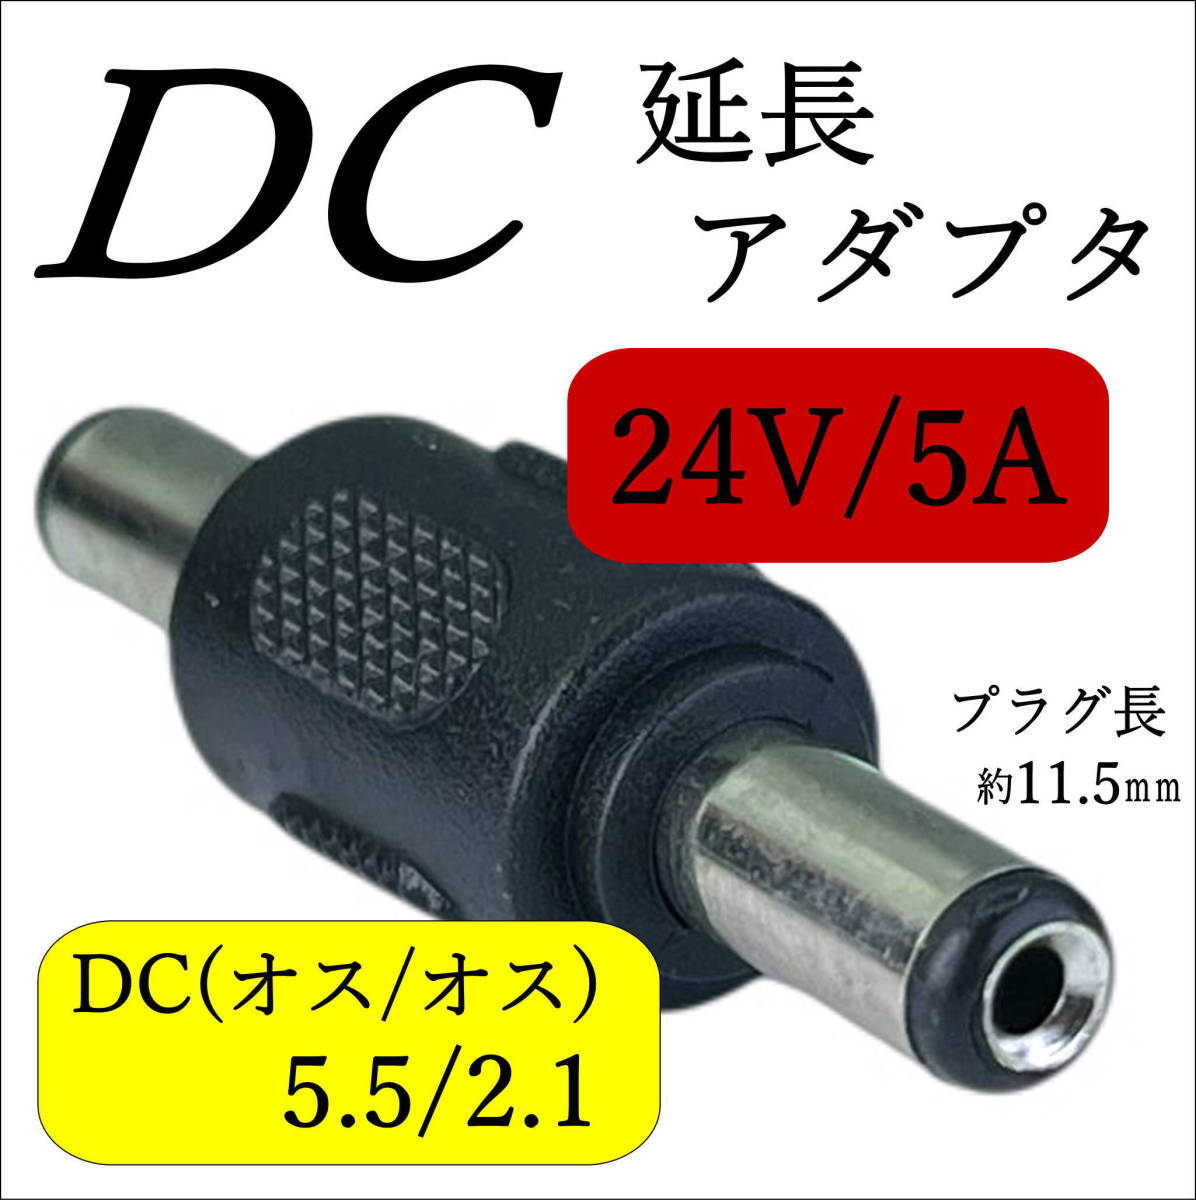 DCケーブル(メス)同士をつなげる延長アダプタ 外径5.5mm/内径2.1mm(オス/オス) ストレート型プラグ 24V/5A C25521MM_画像1